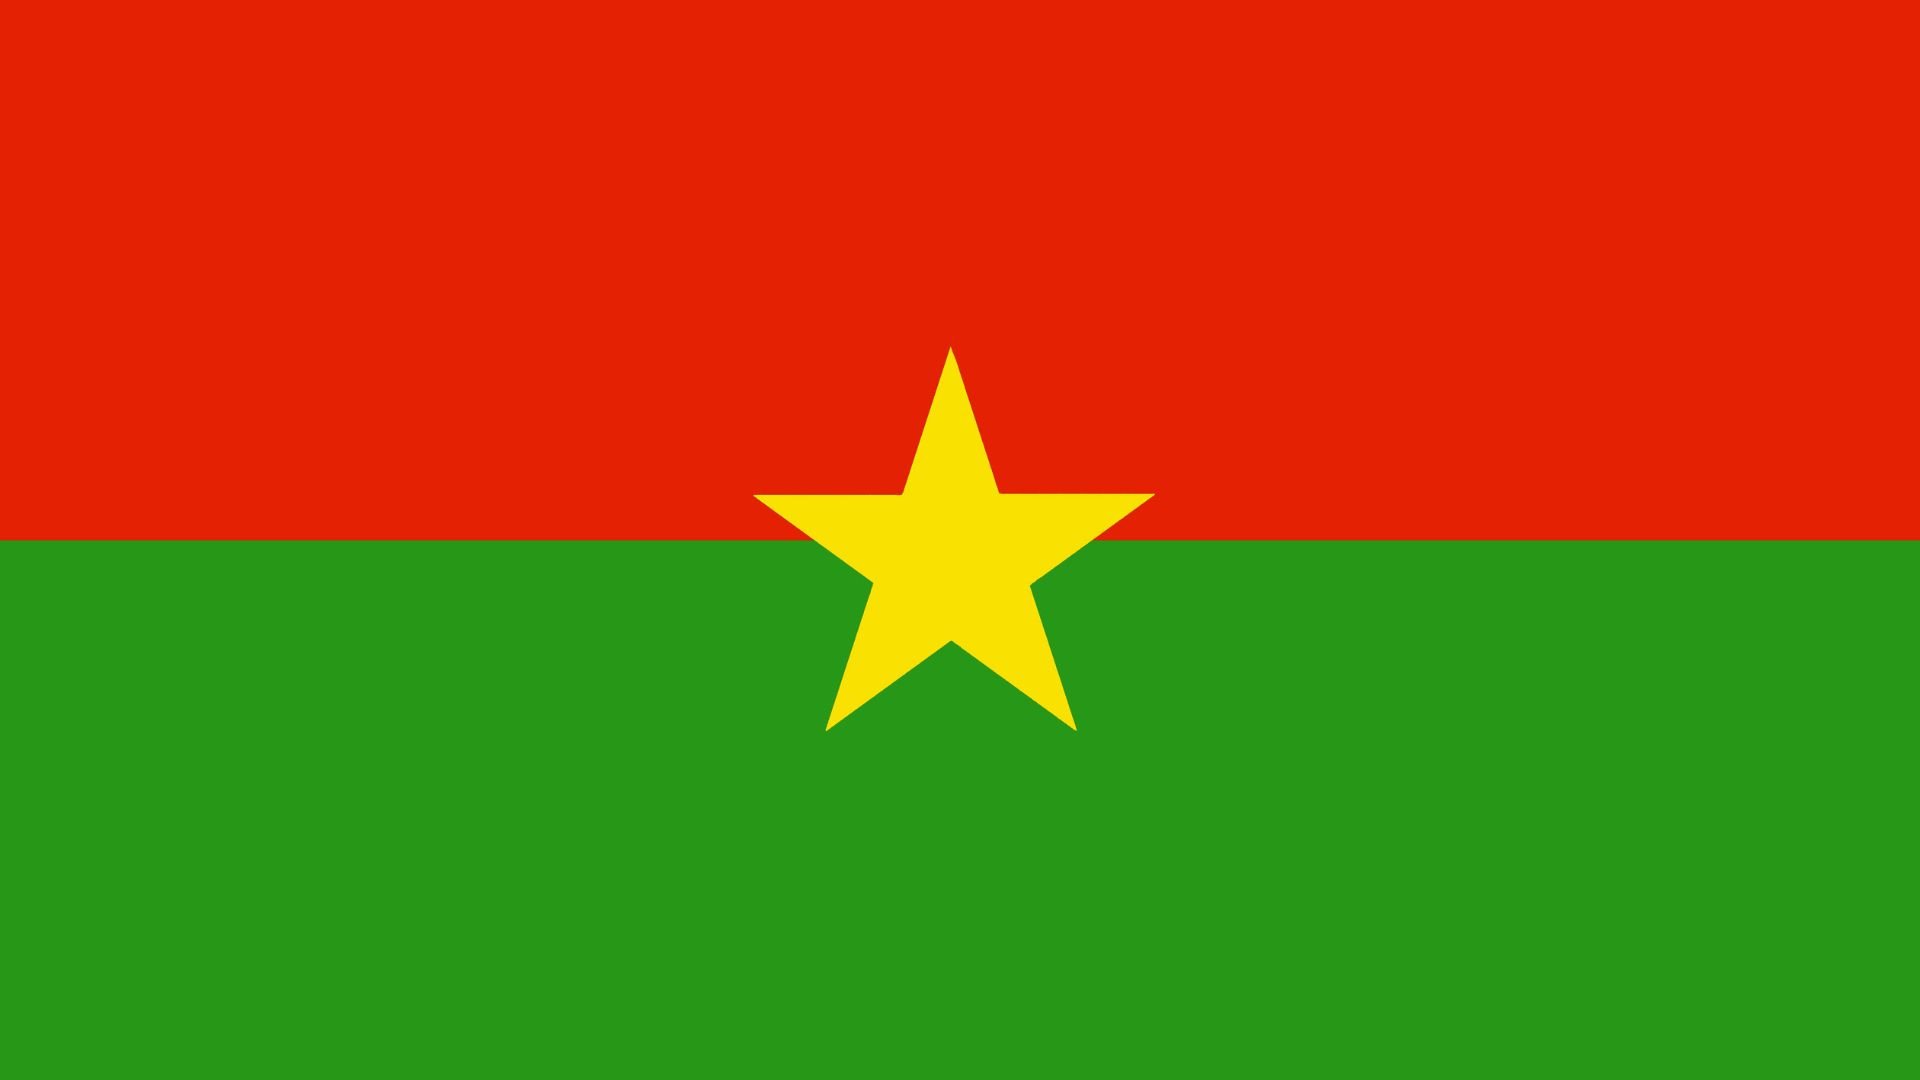 A bandeira é formada por duas listras horizontais, de igual largura, sendo a parte superior vermelha e a inferior verde, com uma estrela amarela de cinco pontas no centro da bandeira.